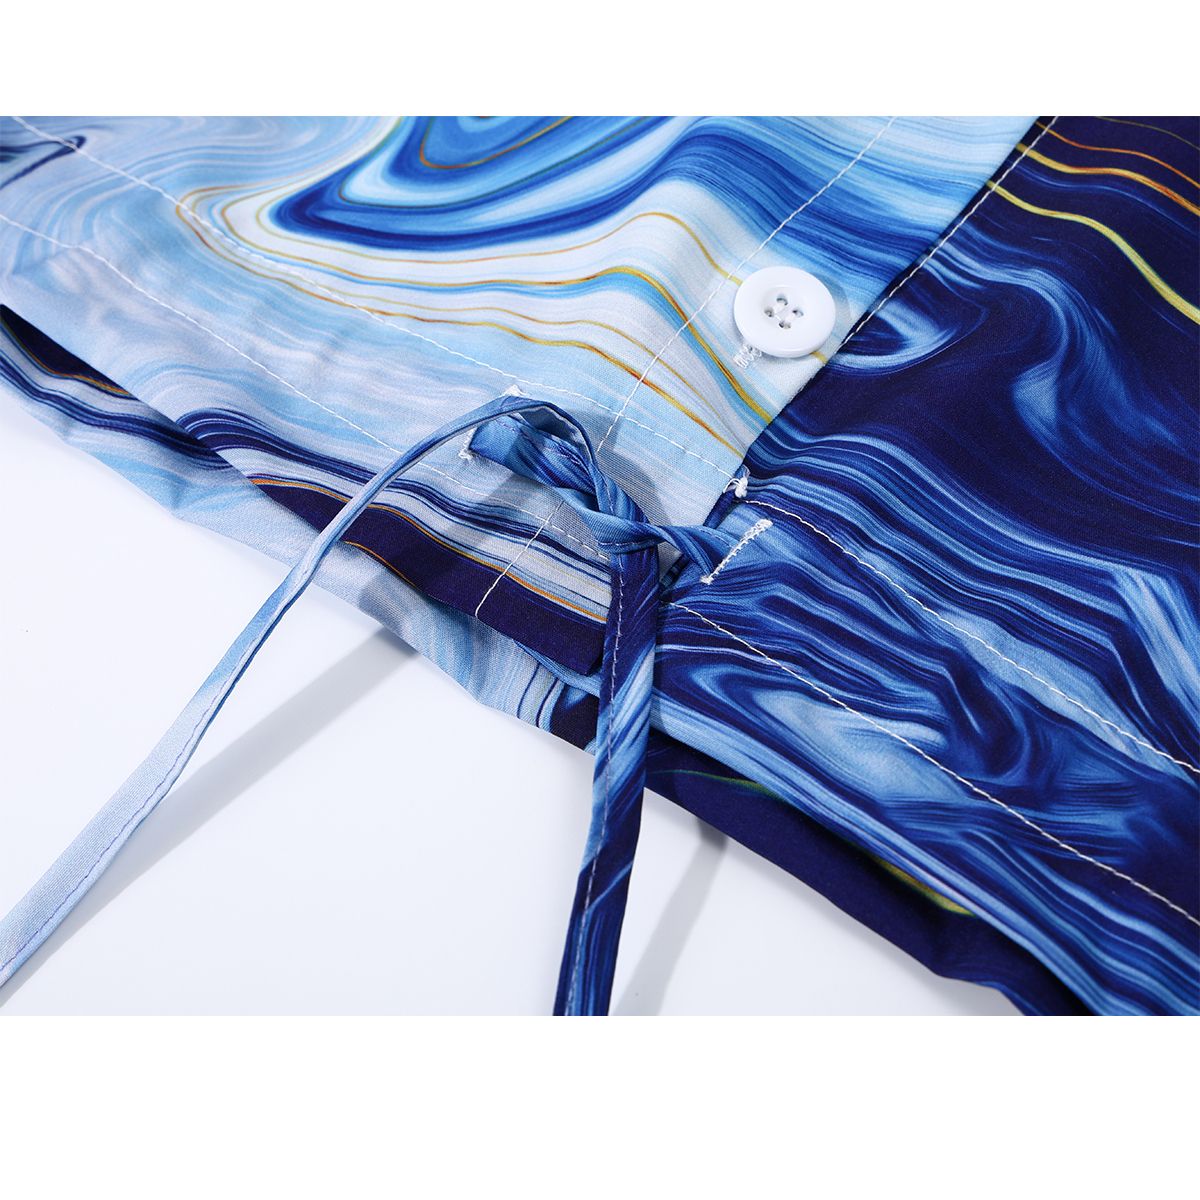 群青の抽象画ショートシャツ 
manus-machina.com/collections/an… 
青々とした群青色のインクを滲ませて描いた抽象絵画のようなショート丈のシャツ。裾部分は絞れるようになっています。絵の具の流動性を用いて描き出したアートなアイテム。偶然が生み出した美しいインクの広がり。